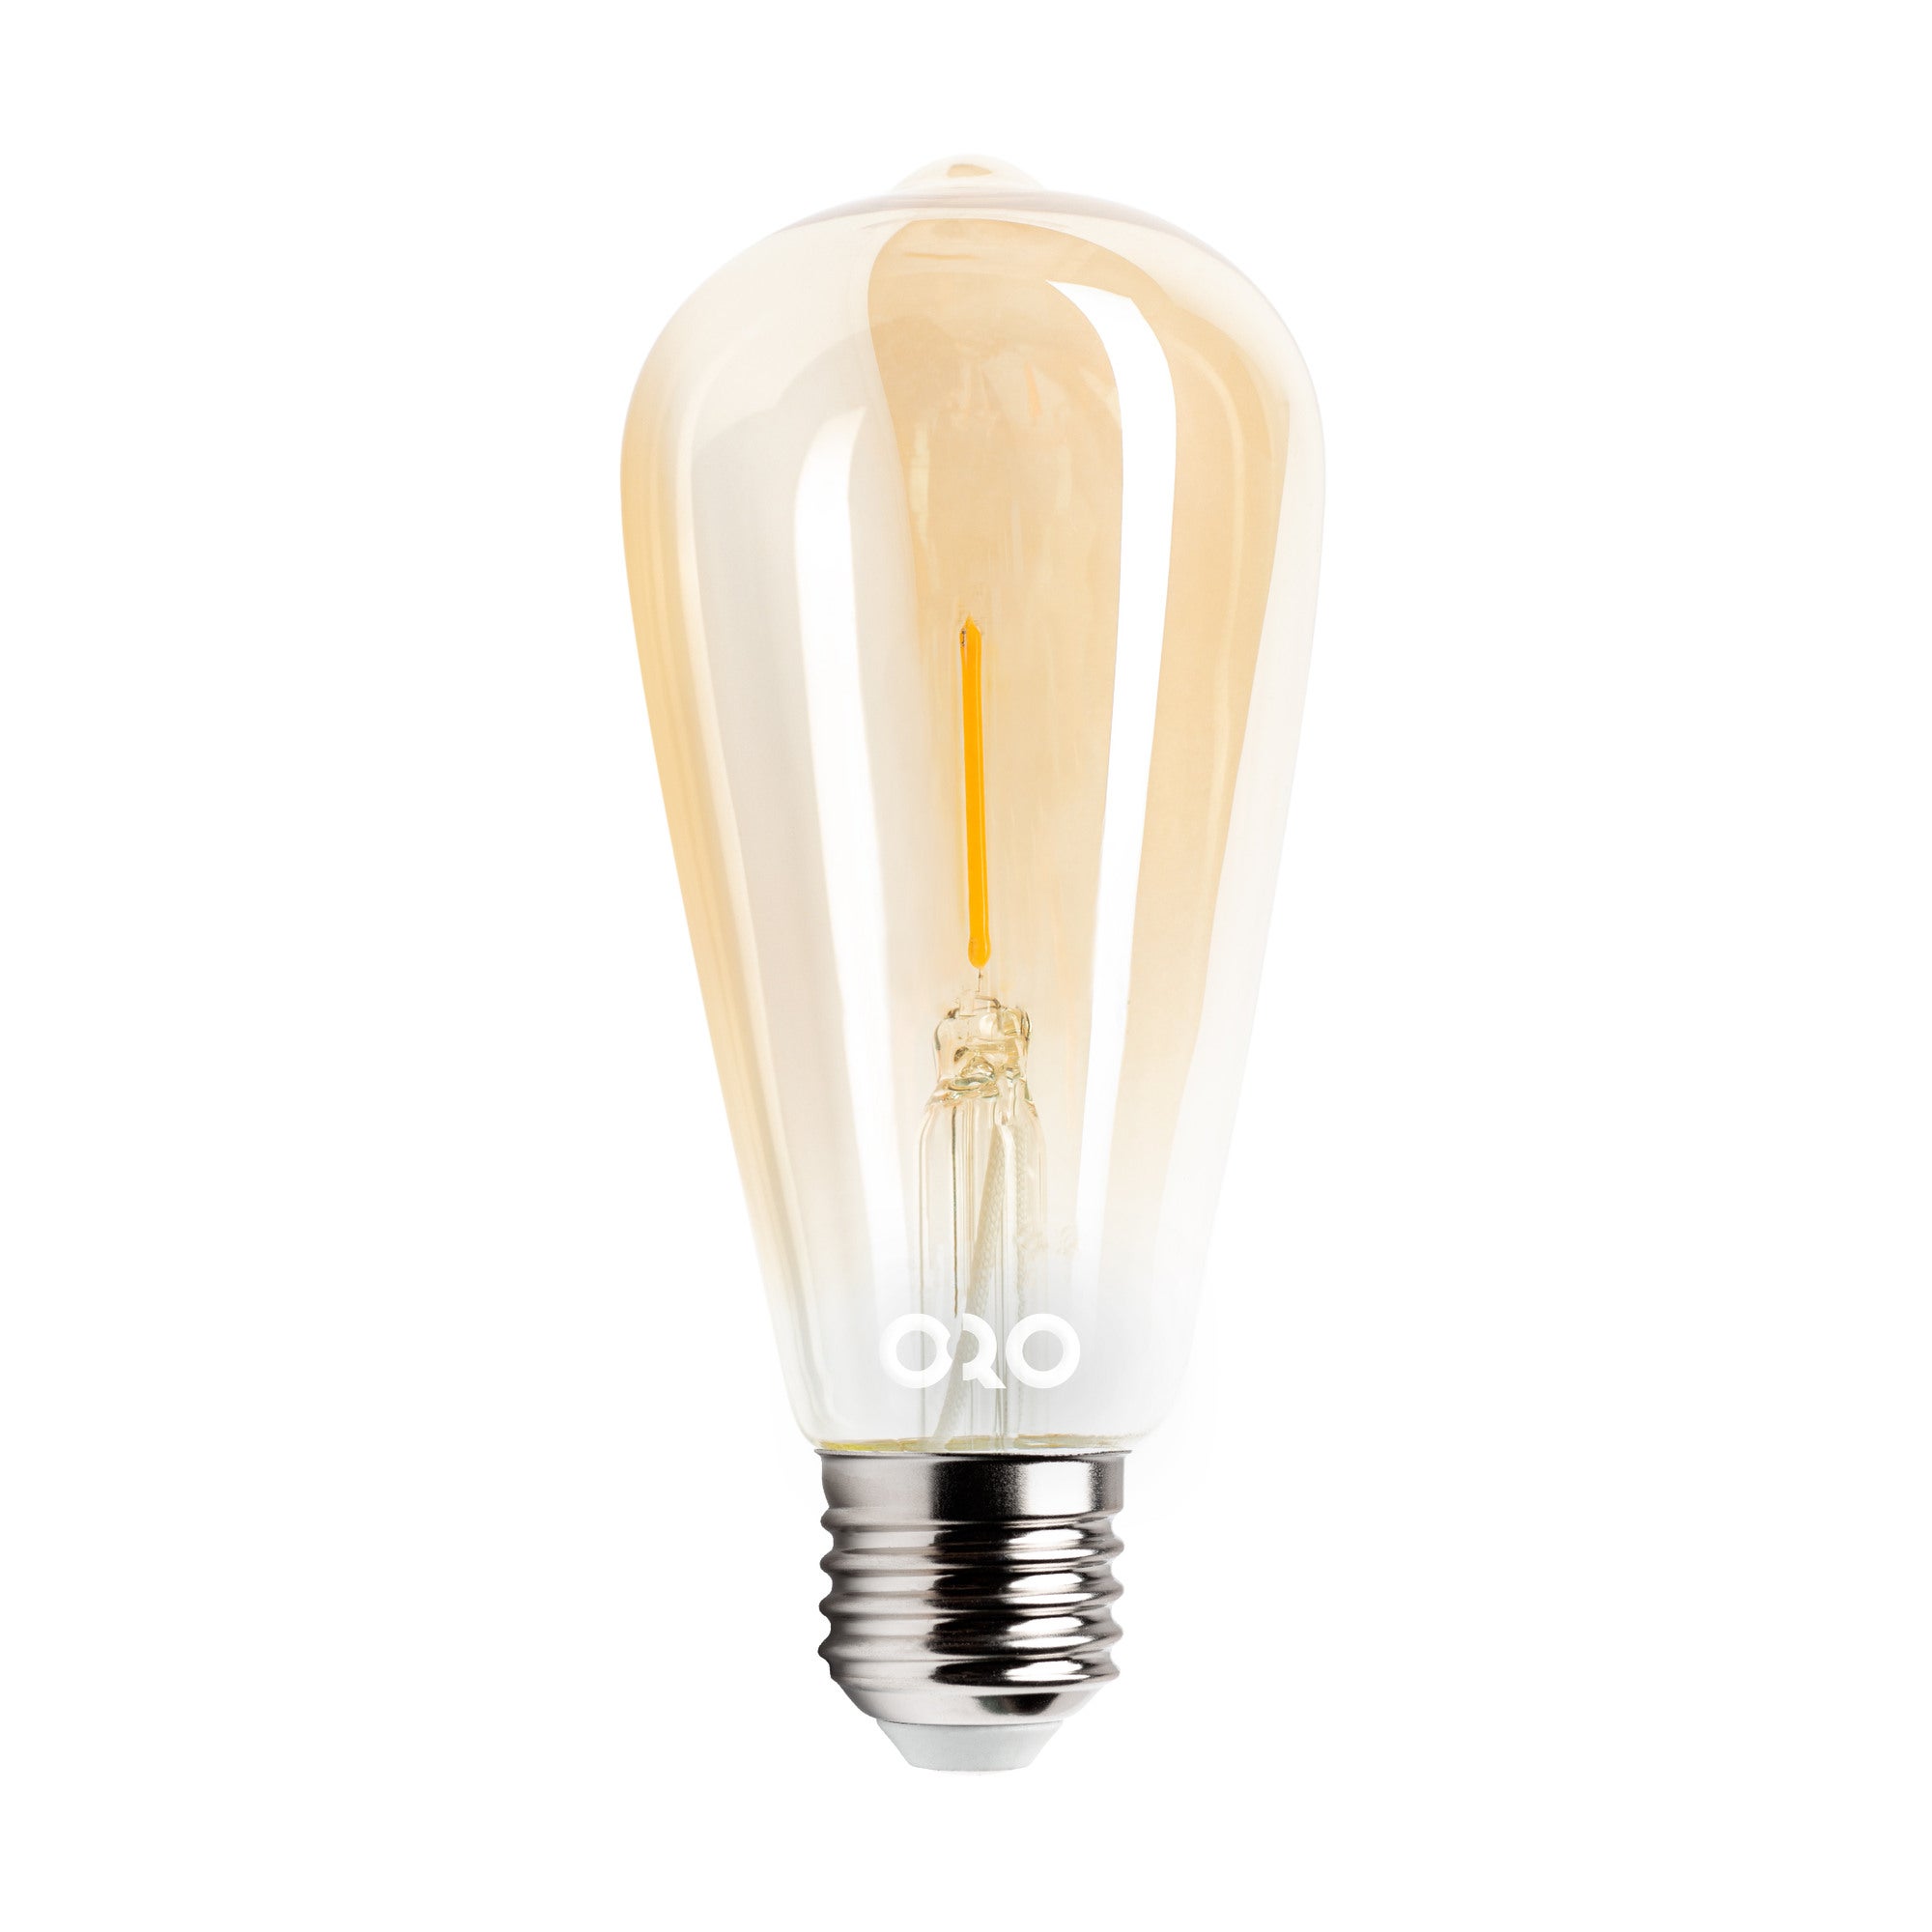 Zdjęcia - Żarówka ORO&ORO  LED E27 Filament 1,3W 55Lm 2200K ST64 bakłażan bursztynowa 